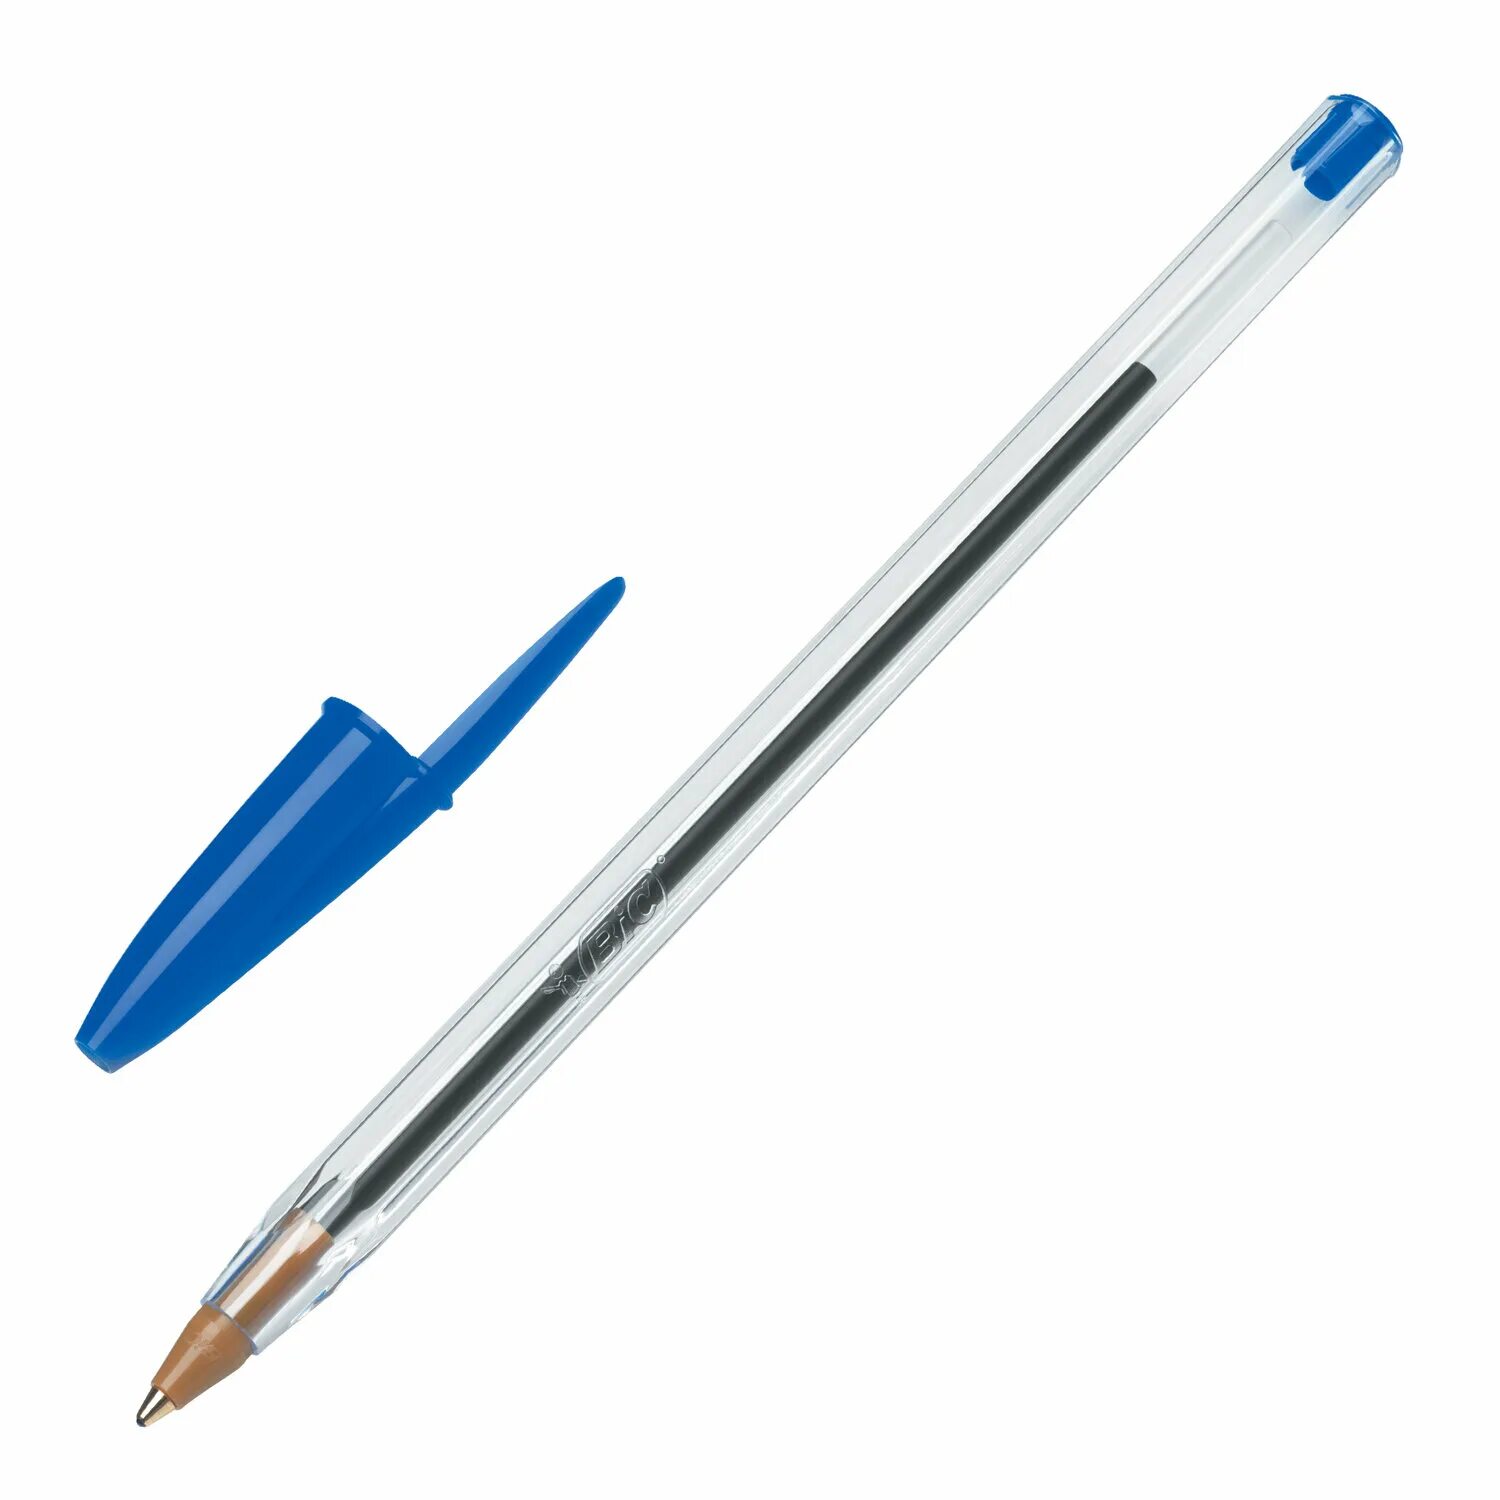 Ручка шариковая синяя 1 мм. Ручка BIC Cristal. Ручки шариковые BIC 0.32. Ручка шариковая BIC Cristal. Набор шариковых ручек BIC Cristal.